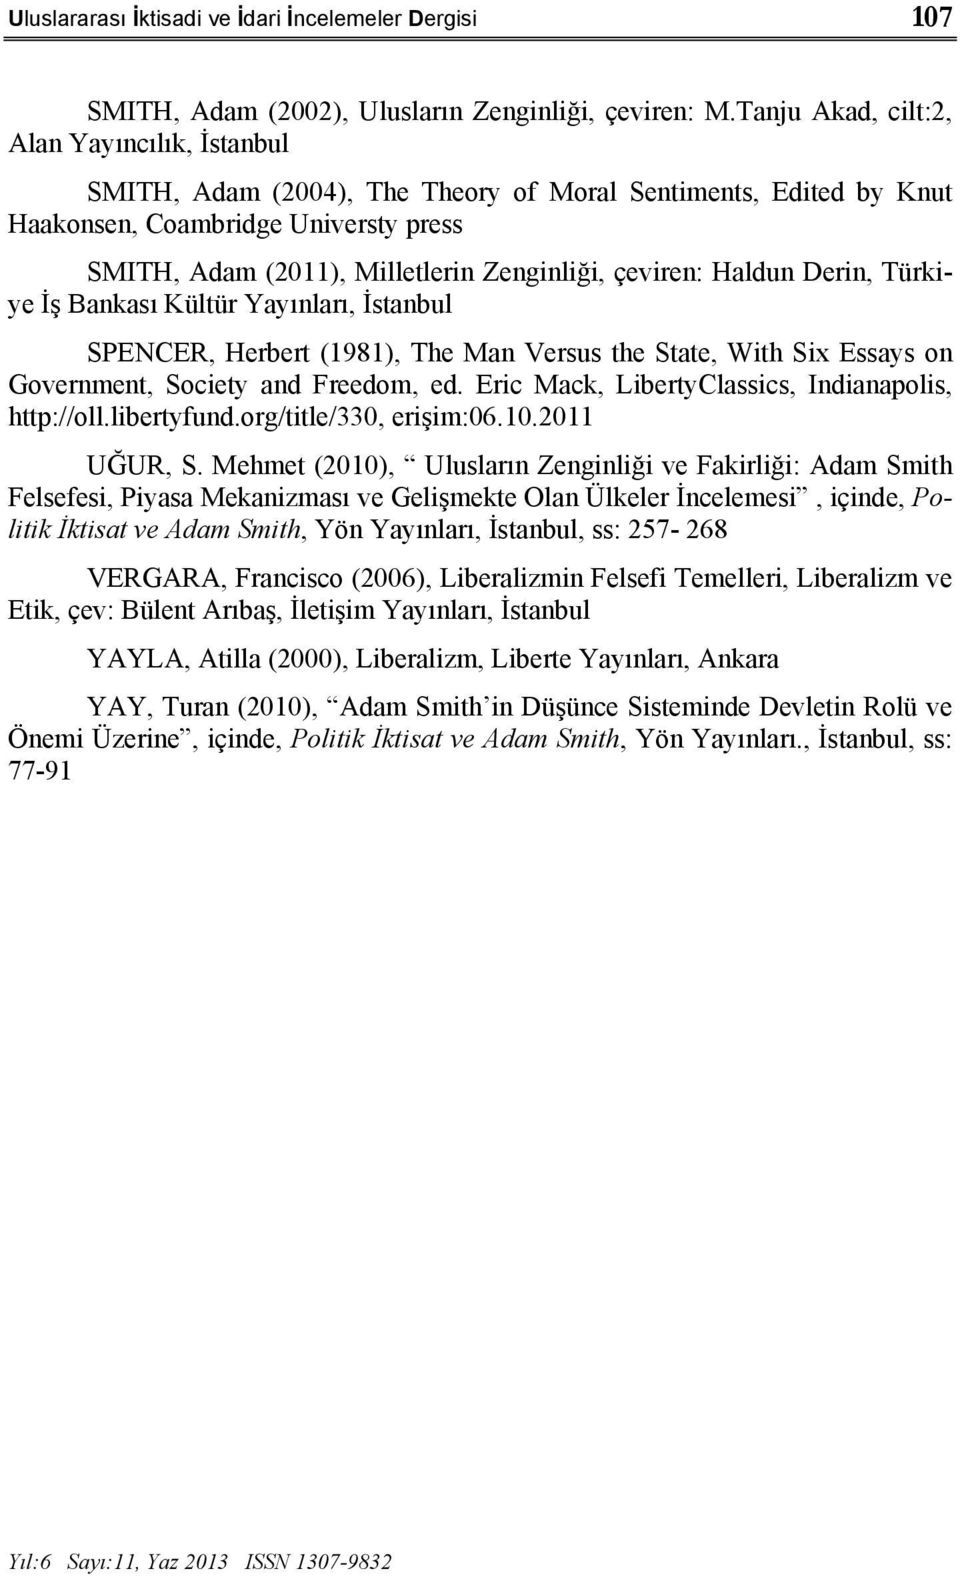 çeviren: Haldun Derin, Türkiye İş Bankası Kültür Yayınları, İstanbul SPENCER, Herbert (1981), The Man Versus the State, With Six Essays on Government, Society and Freedom, ed.